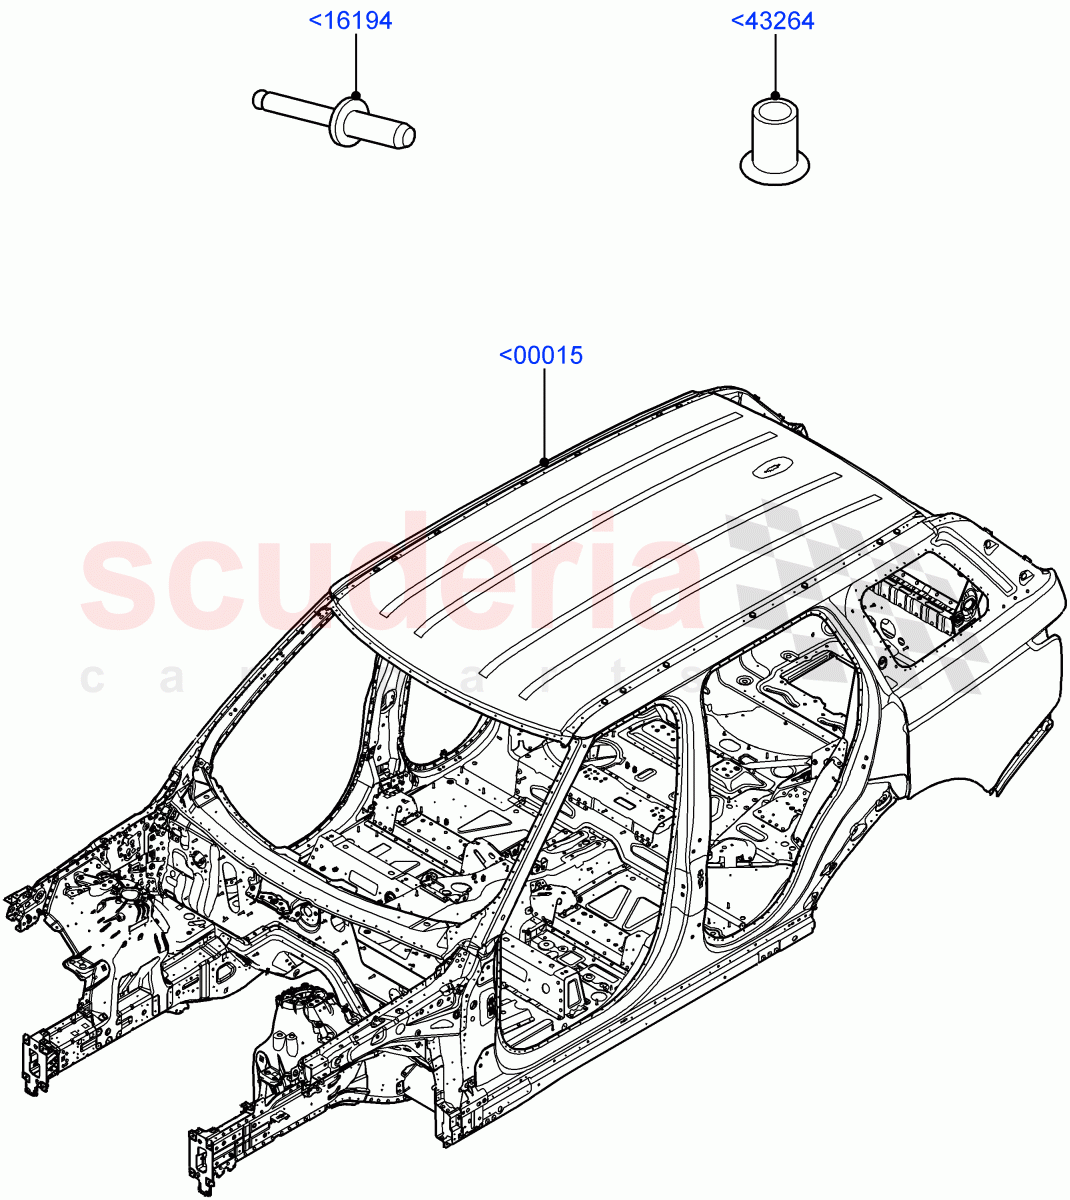 Bodyshell of Land Rover Land Rover Range Rover (2012-2021) [4.4 DOHC Diesel V8 DITC]